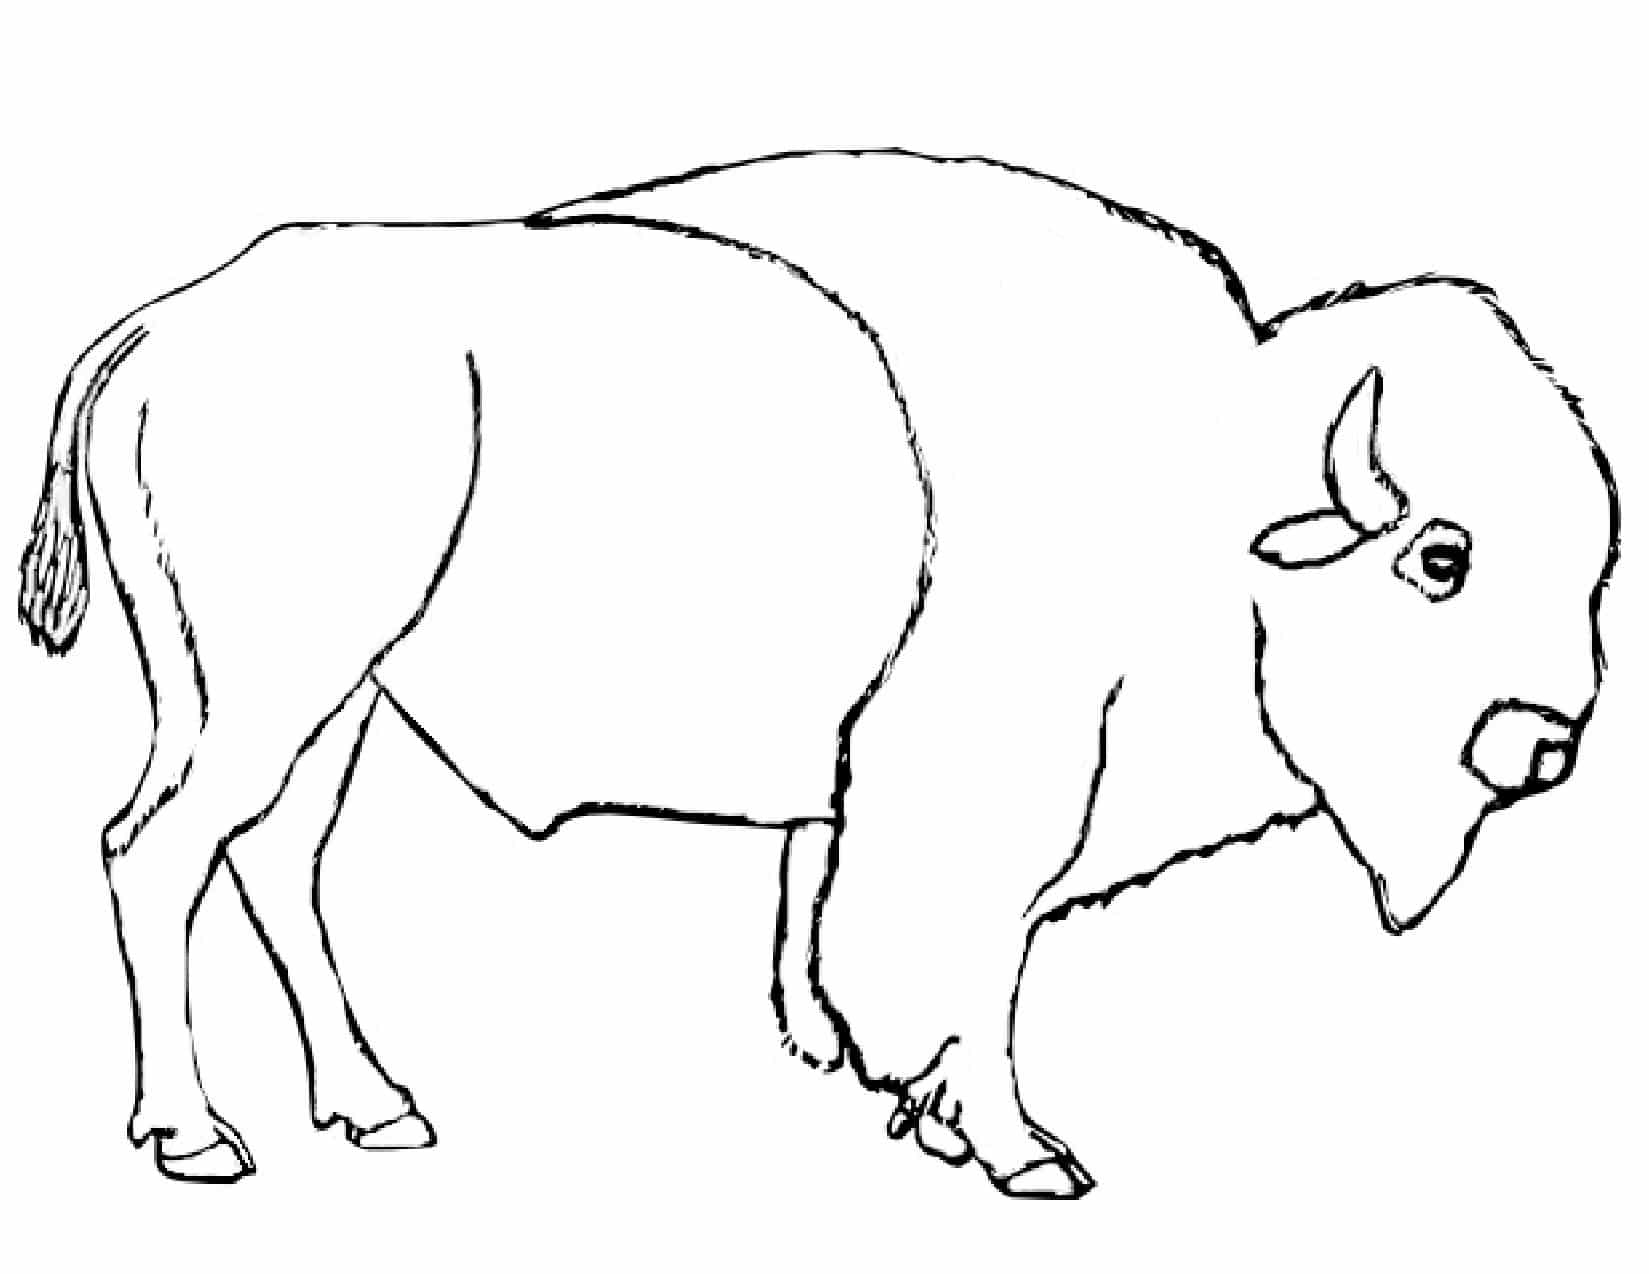 Bison Art Drawing